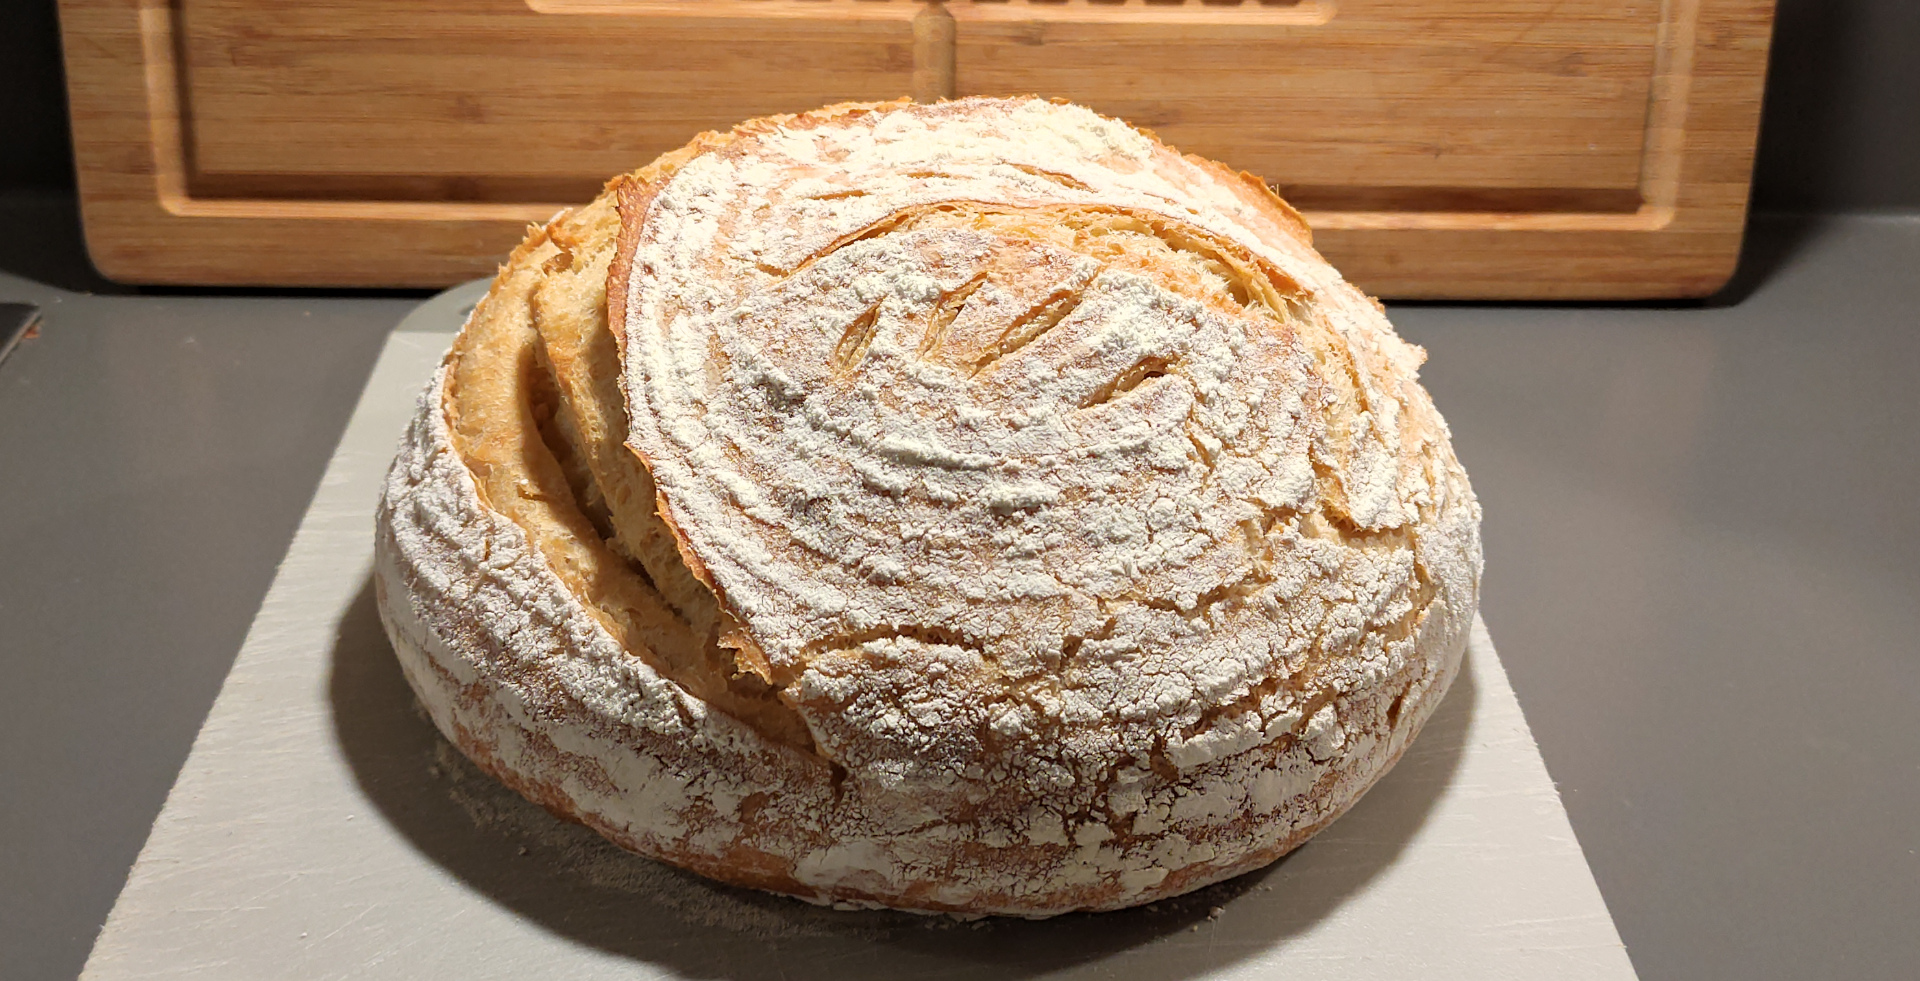 Ein goldbraunes Brot liegt auf einem Kunststoffbrettchen auf einer grauen ArbeitsflÃ¤che. Es ist an der linken Seite tief eingeschnitten und aufgegangen.